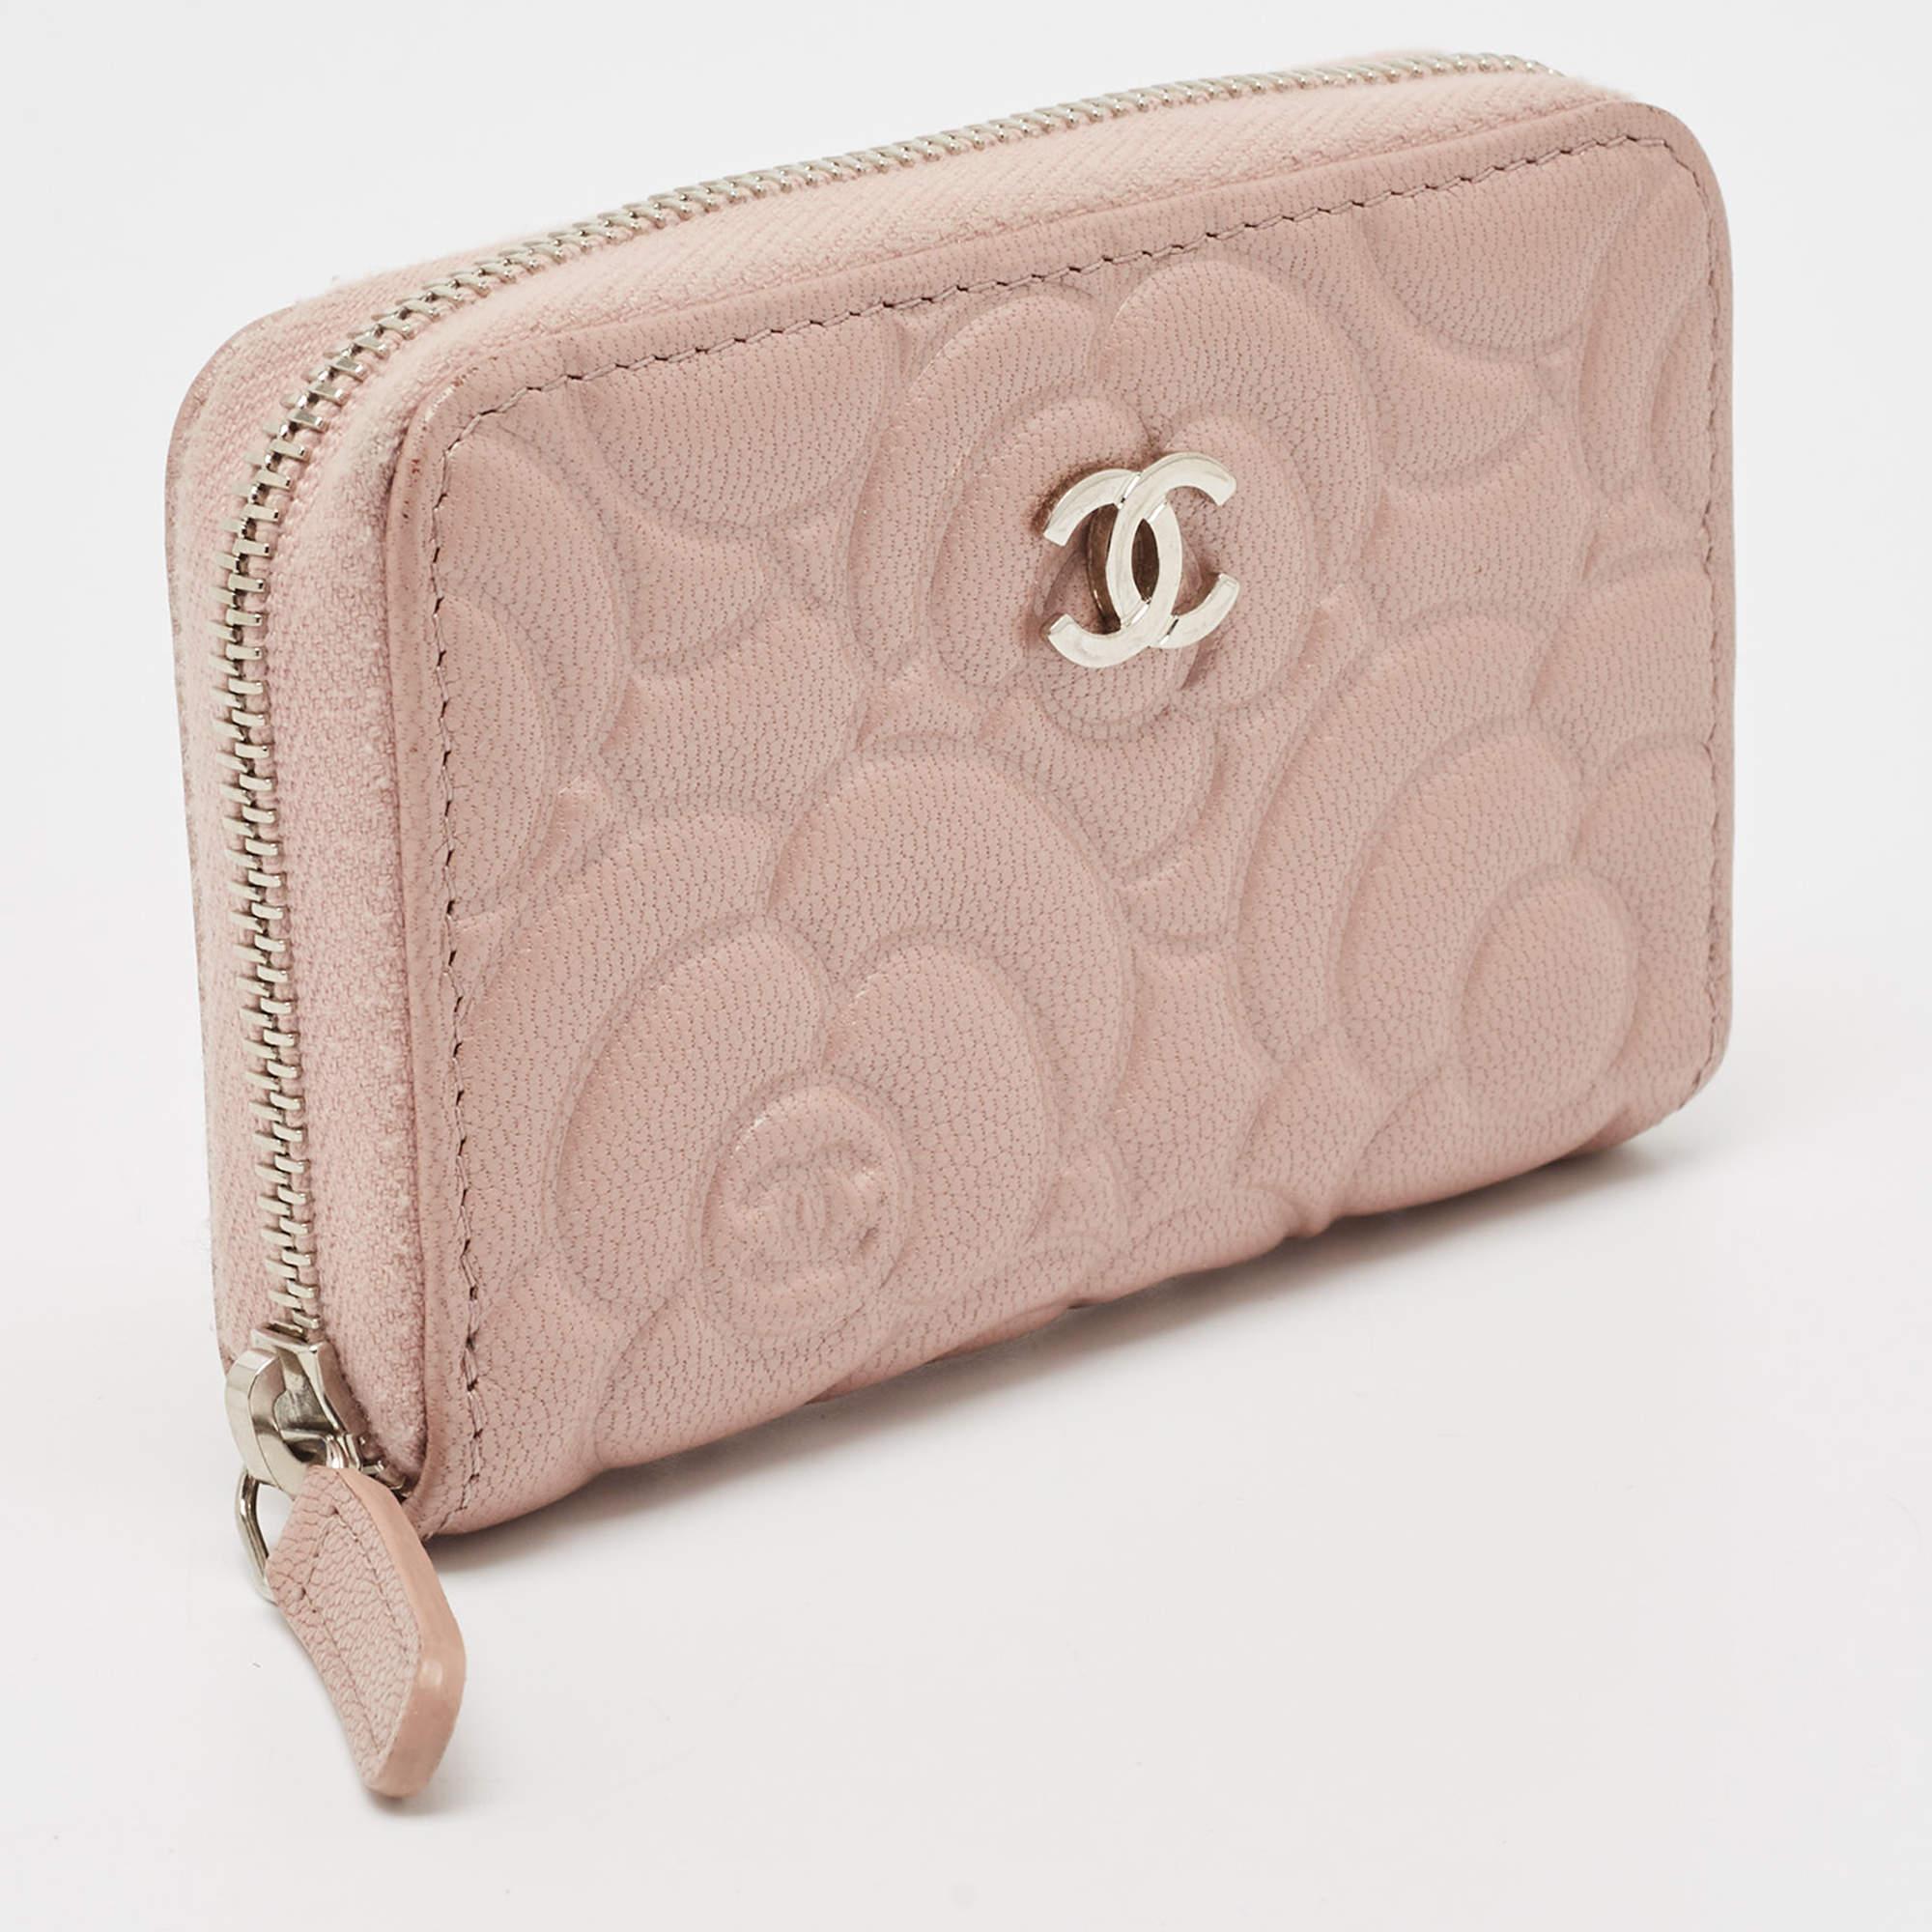 Dieses Portemonnaie von Chanel ist aus gestepptem Kamelienleder gefertigt. Das rosafarbene Etui mit feinen Nähten, die sich in das edle Finish einfügen, ist mit einem Reißverschluss gesichert und mit dem CC-Logo versehen. Eine klassische